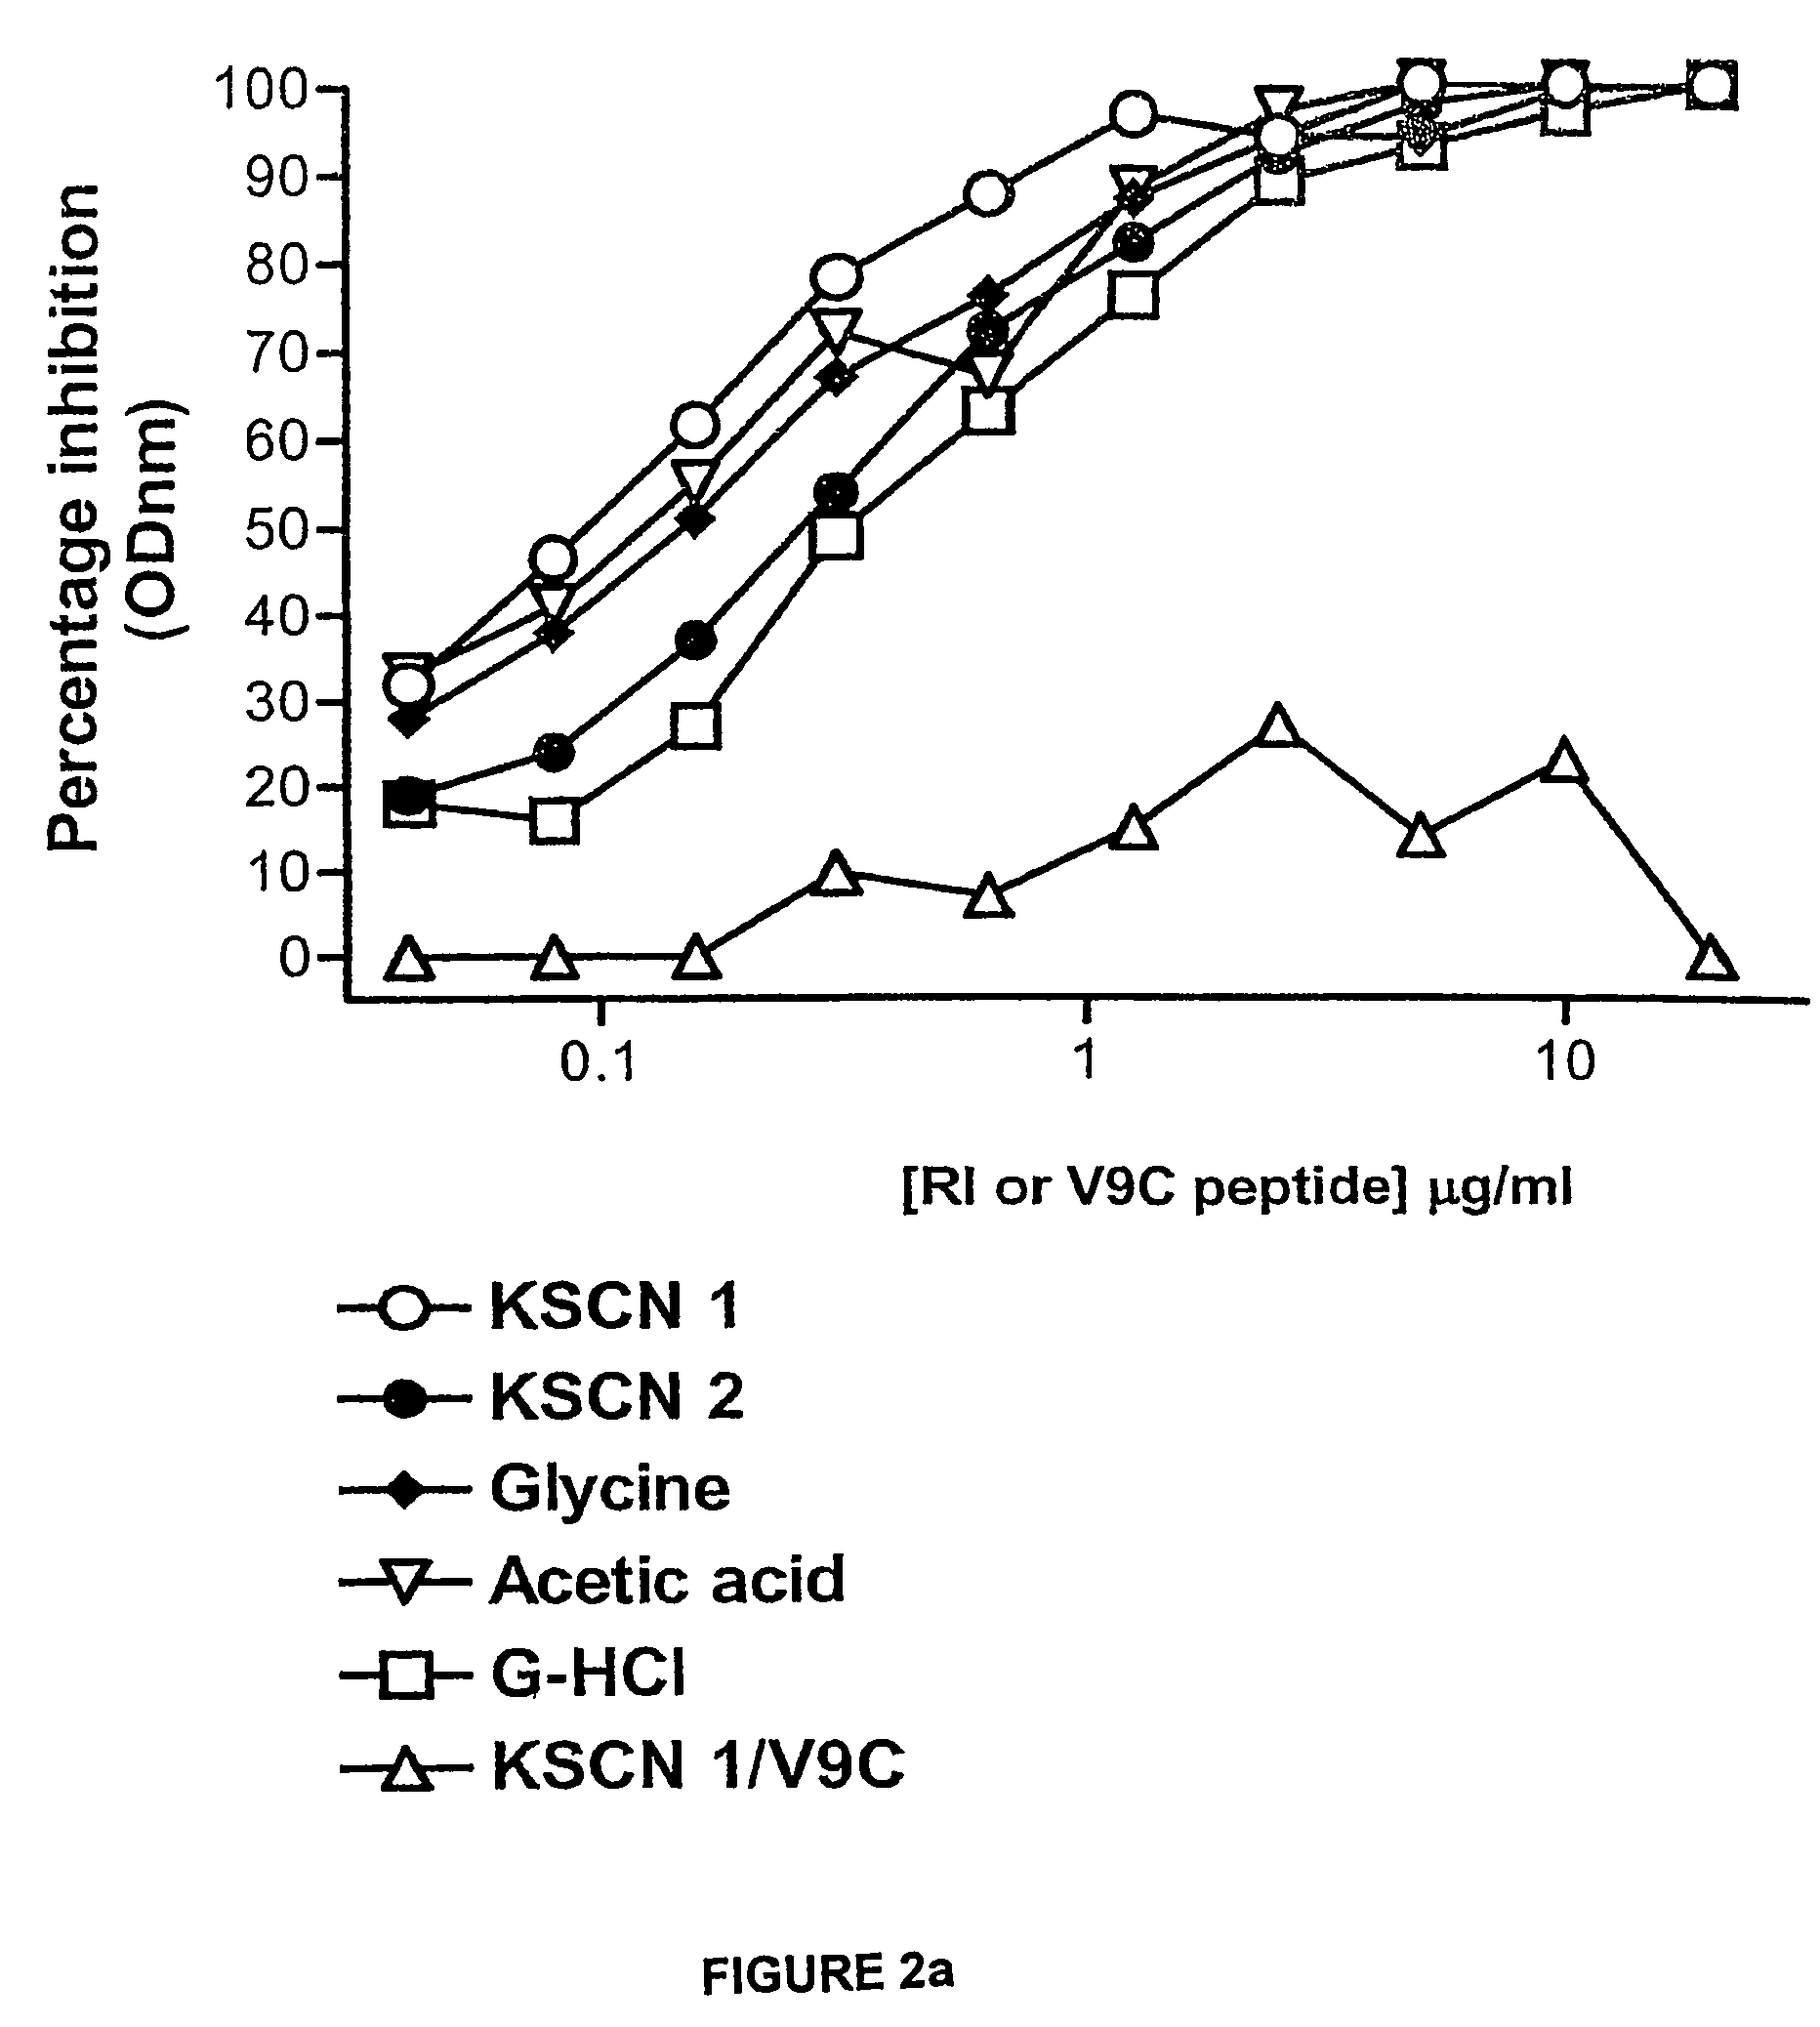 Retro-inverso gonadotropin-releasing hormone peptide and vaccine composition